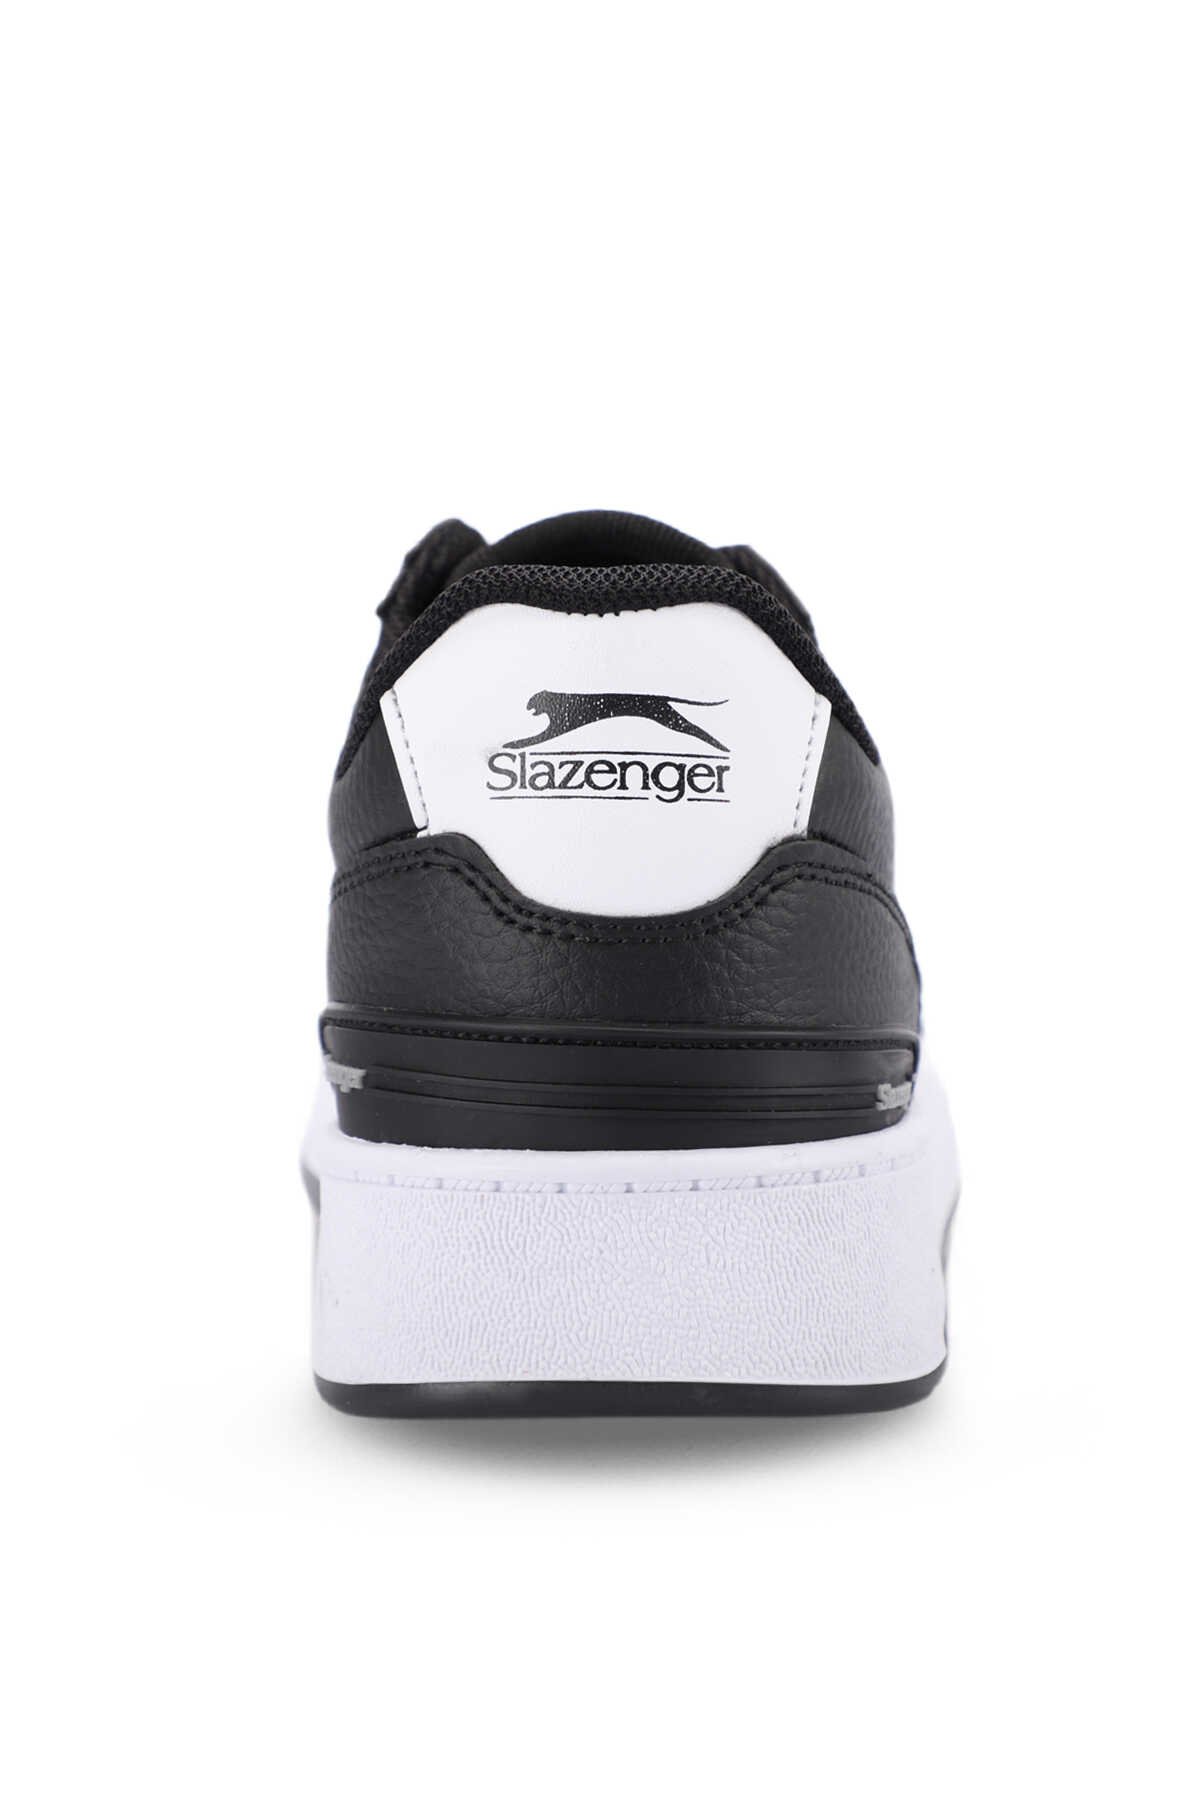 Slazenger DAPHNE Sneaker Erkek Ayakkabı Siyah / Beyaz